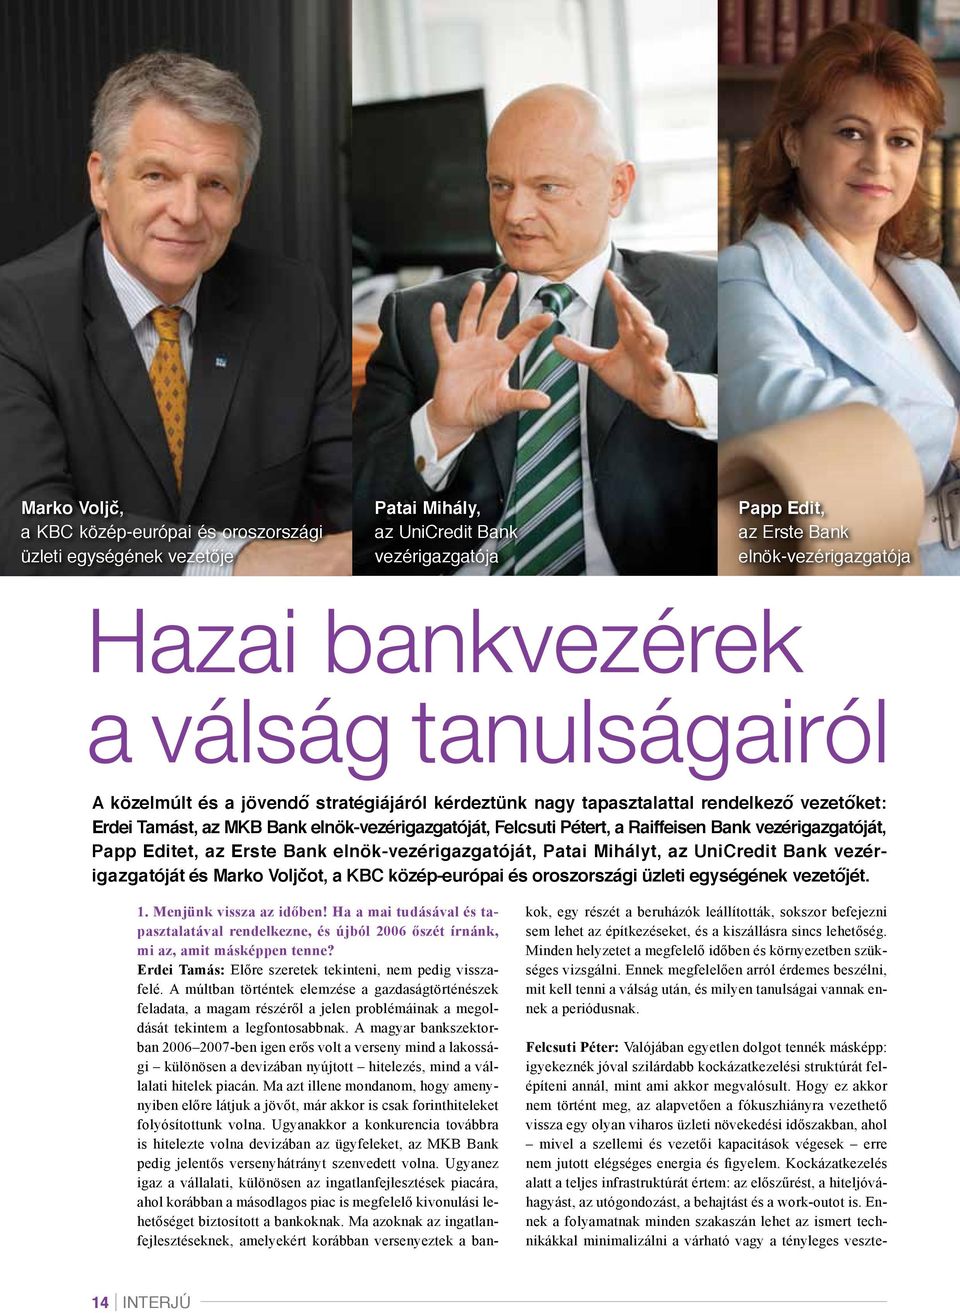 vezérigazgatóját, Papp Editet, az Erste Bank elnök-vezérigazgatóját, Patai Mihályt, az UniCredit Bank vezérigazgatóját és Marko Voljčot, a KBC közép-európai és oroszországi üzleti egységének